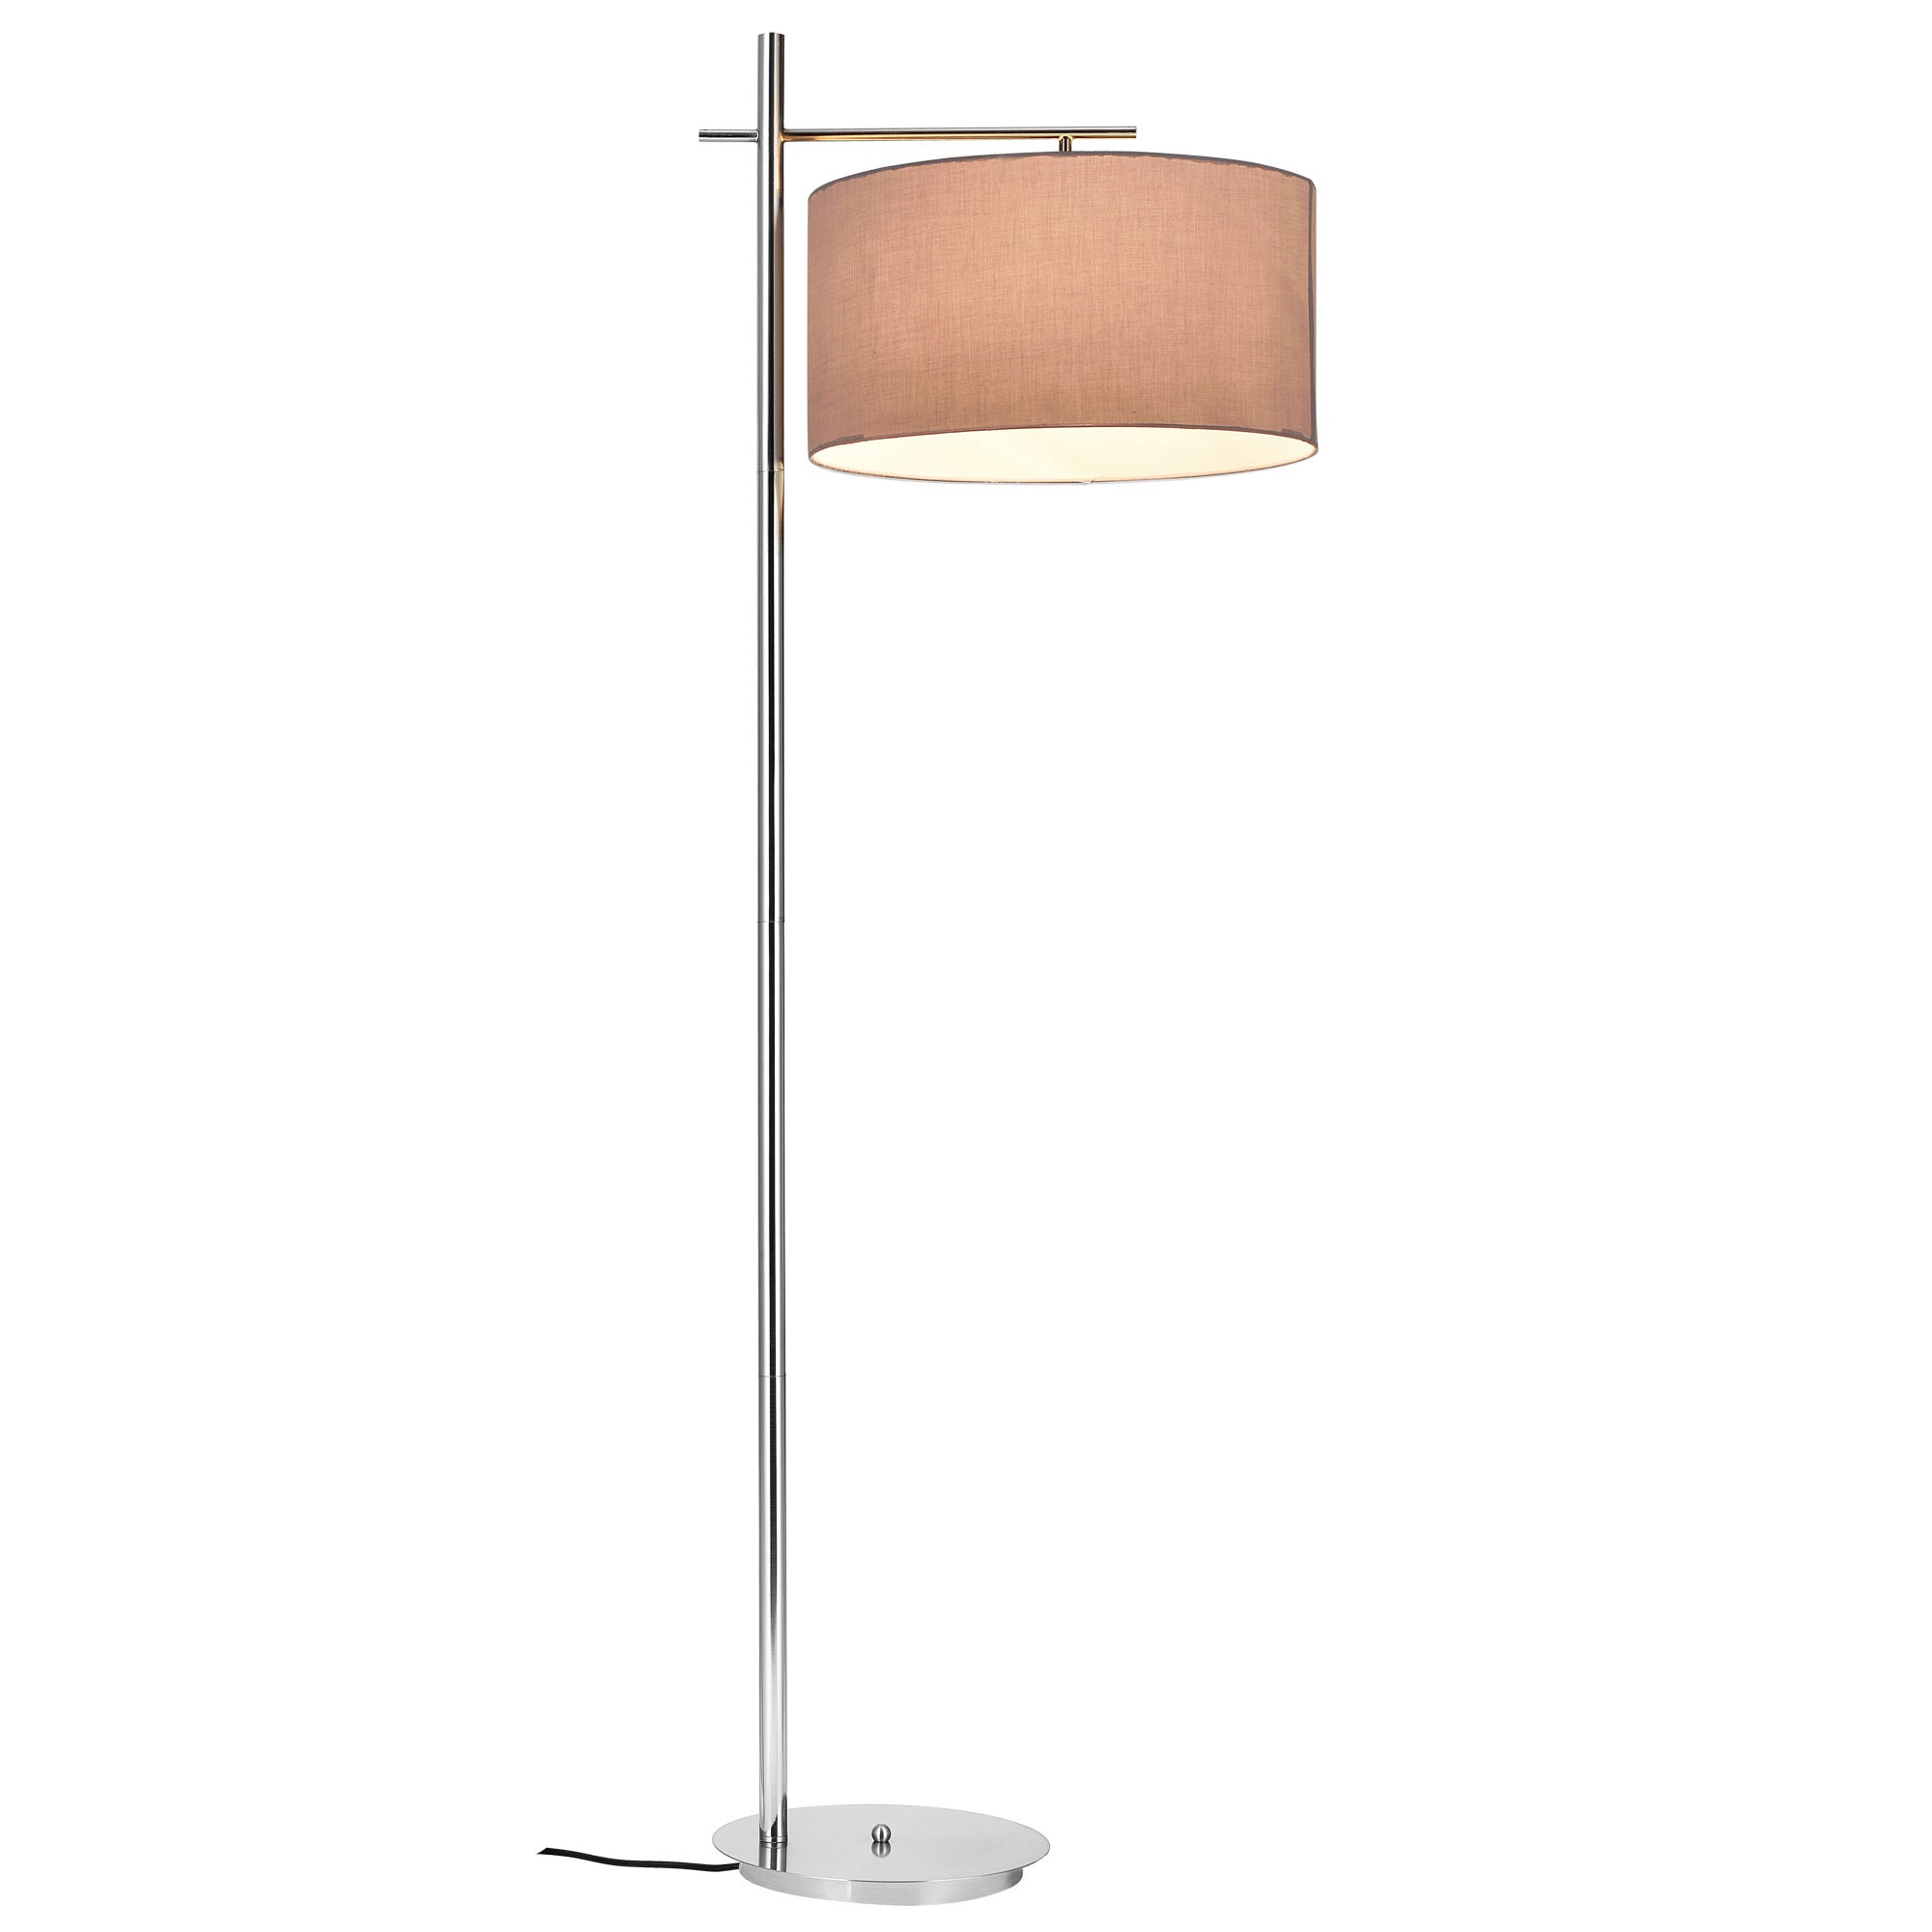 1 x socle E27 lampe sur pied lampe de plancher lampe lampe de salon lampadaire Black Mikado - 170 cm x Ø 35 cm lux.pro